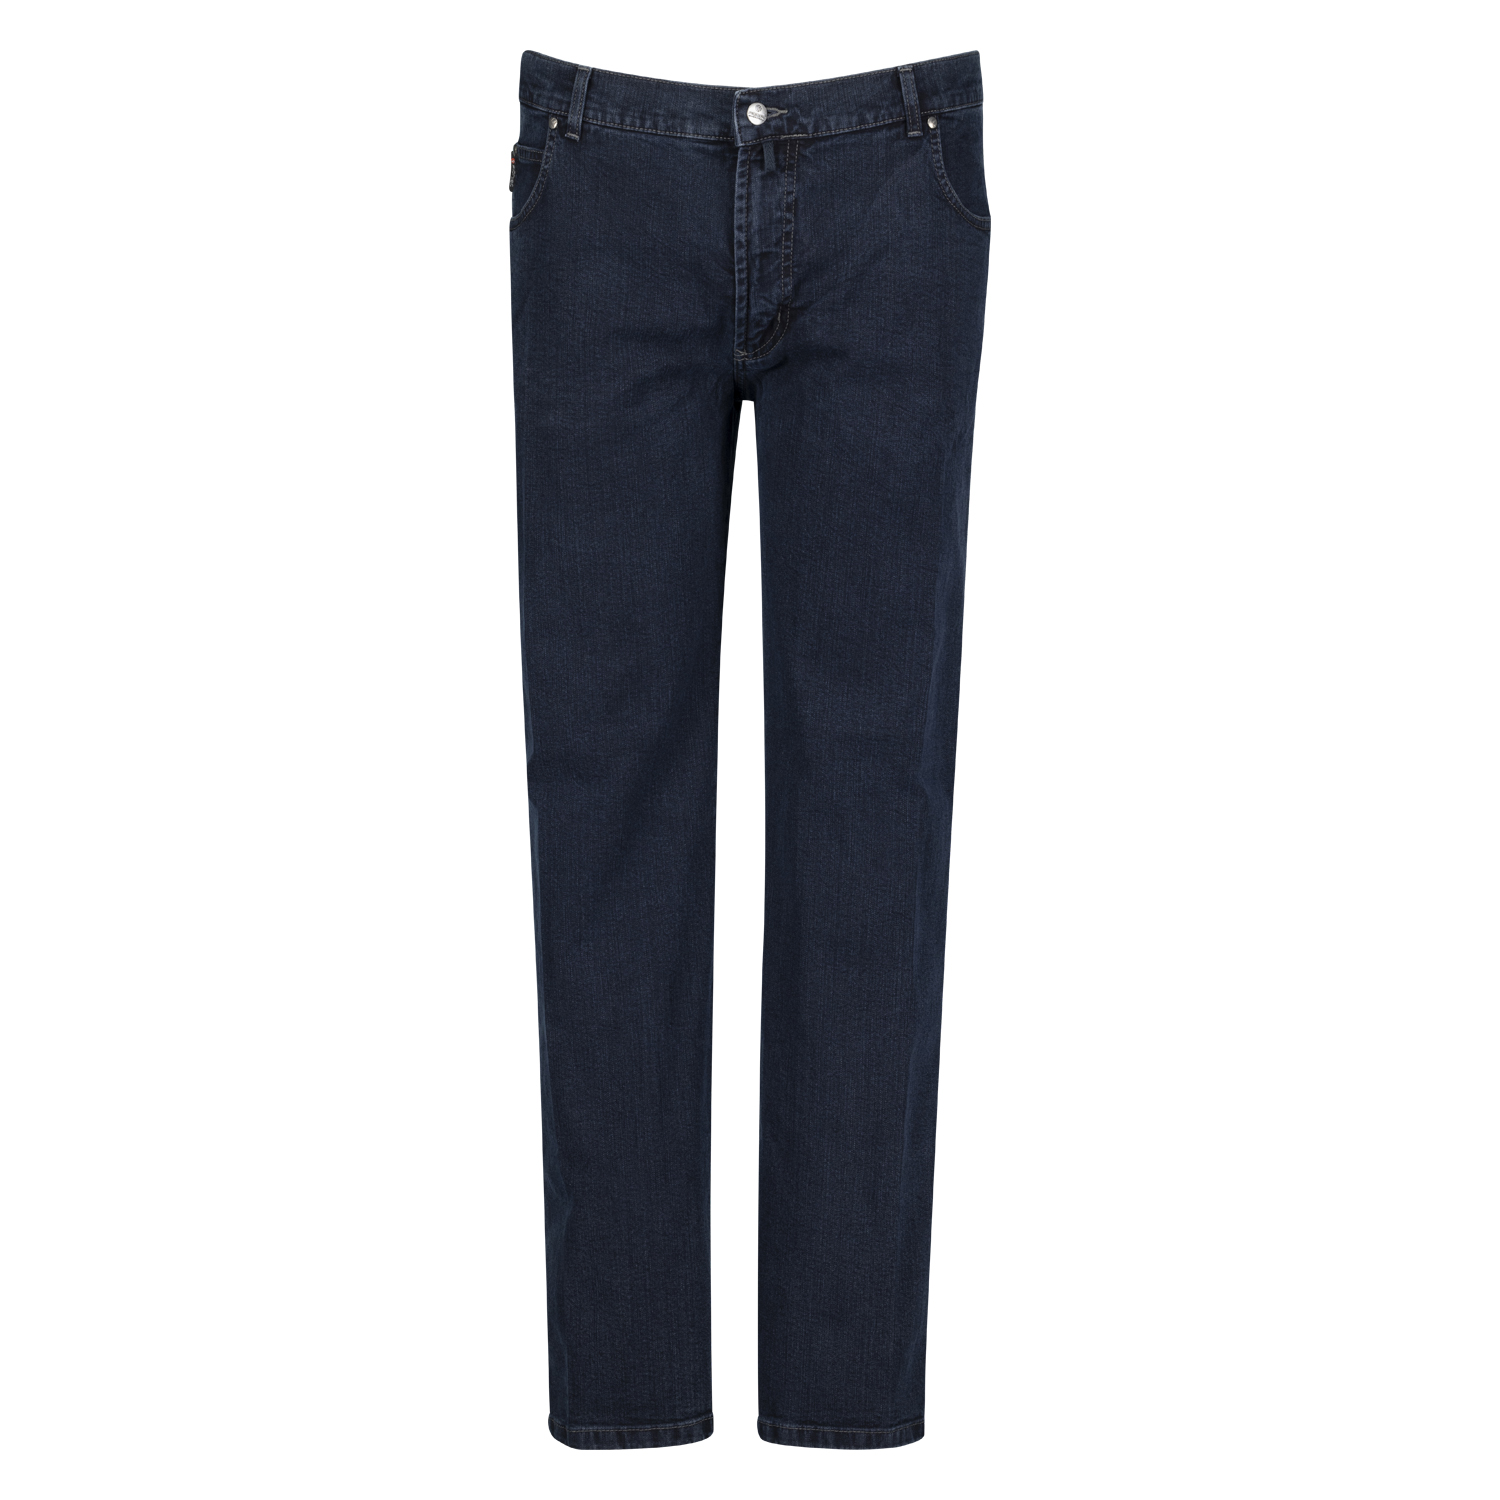 Five Pocket Jeans Modell "Peter" Pioneer in dark blue stonewash Normalgrößen 56 - 74